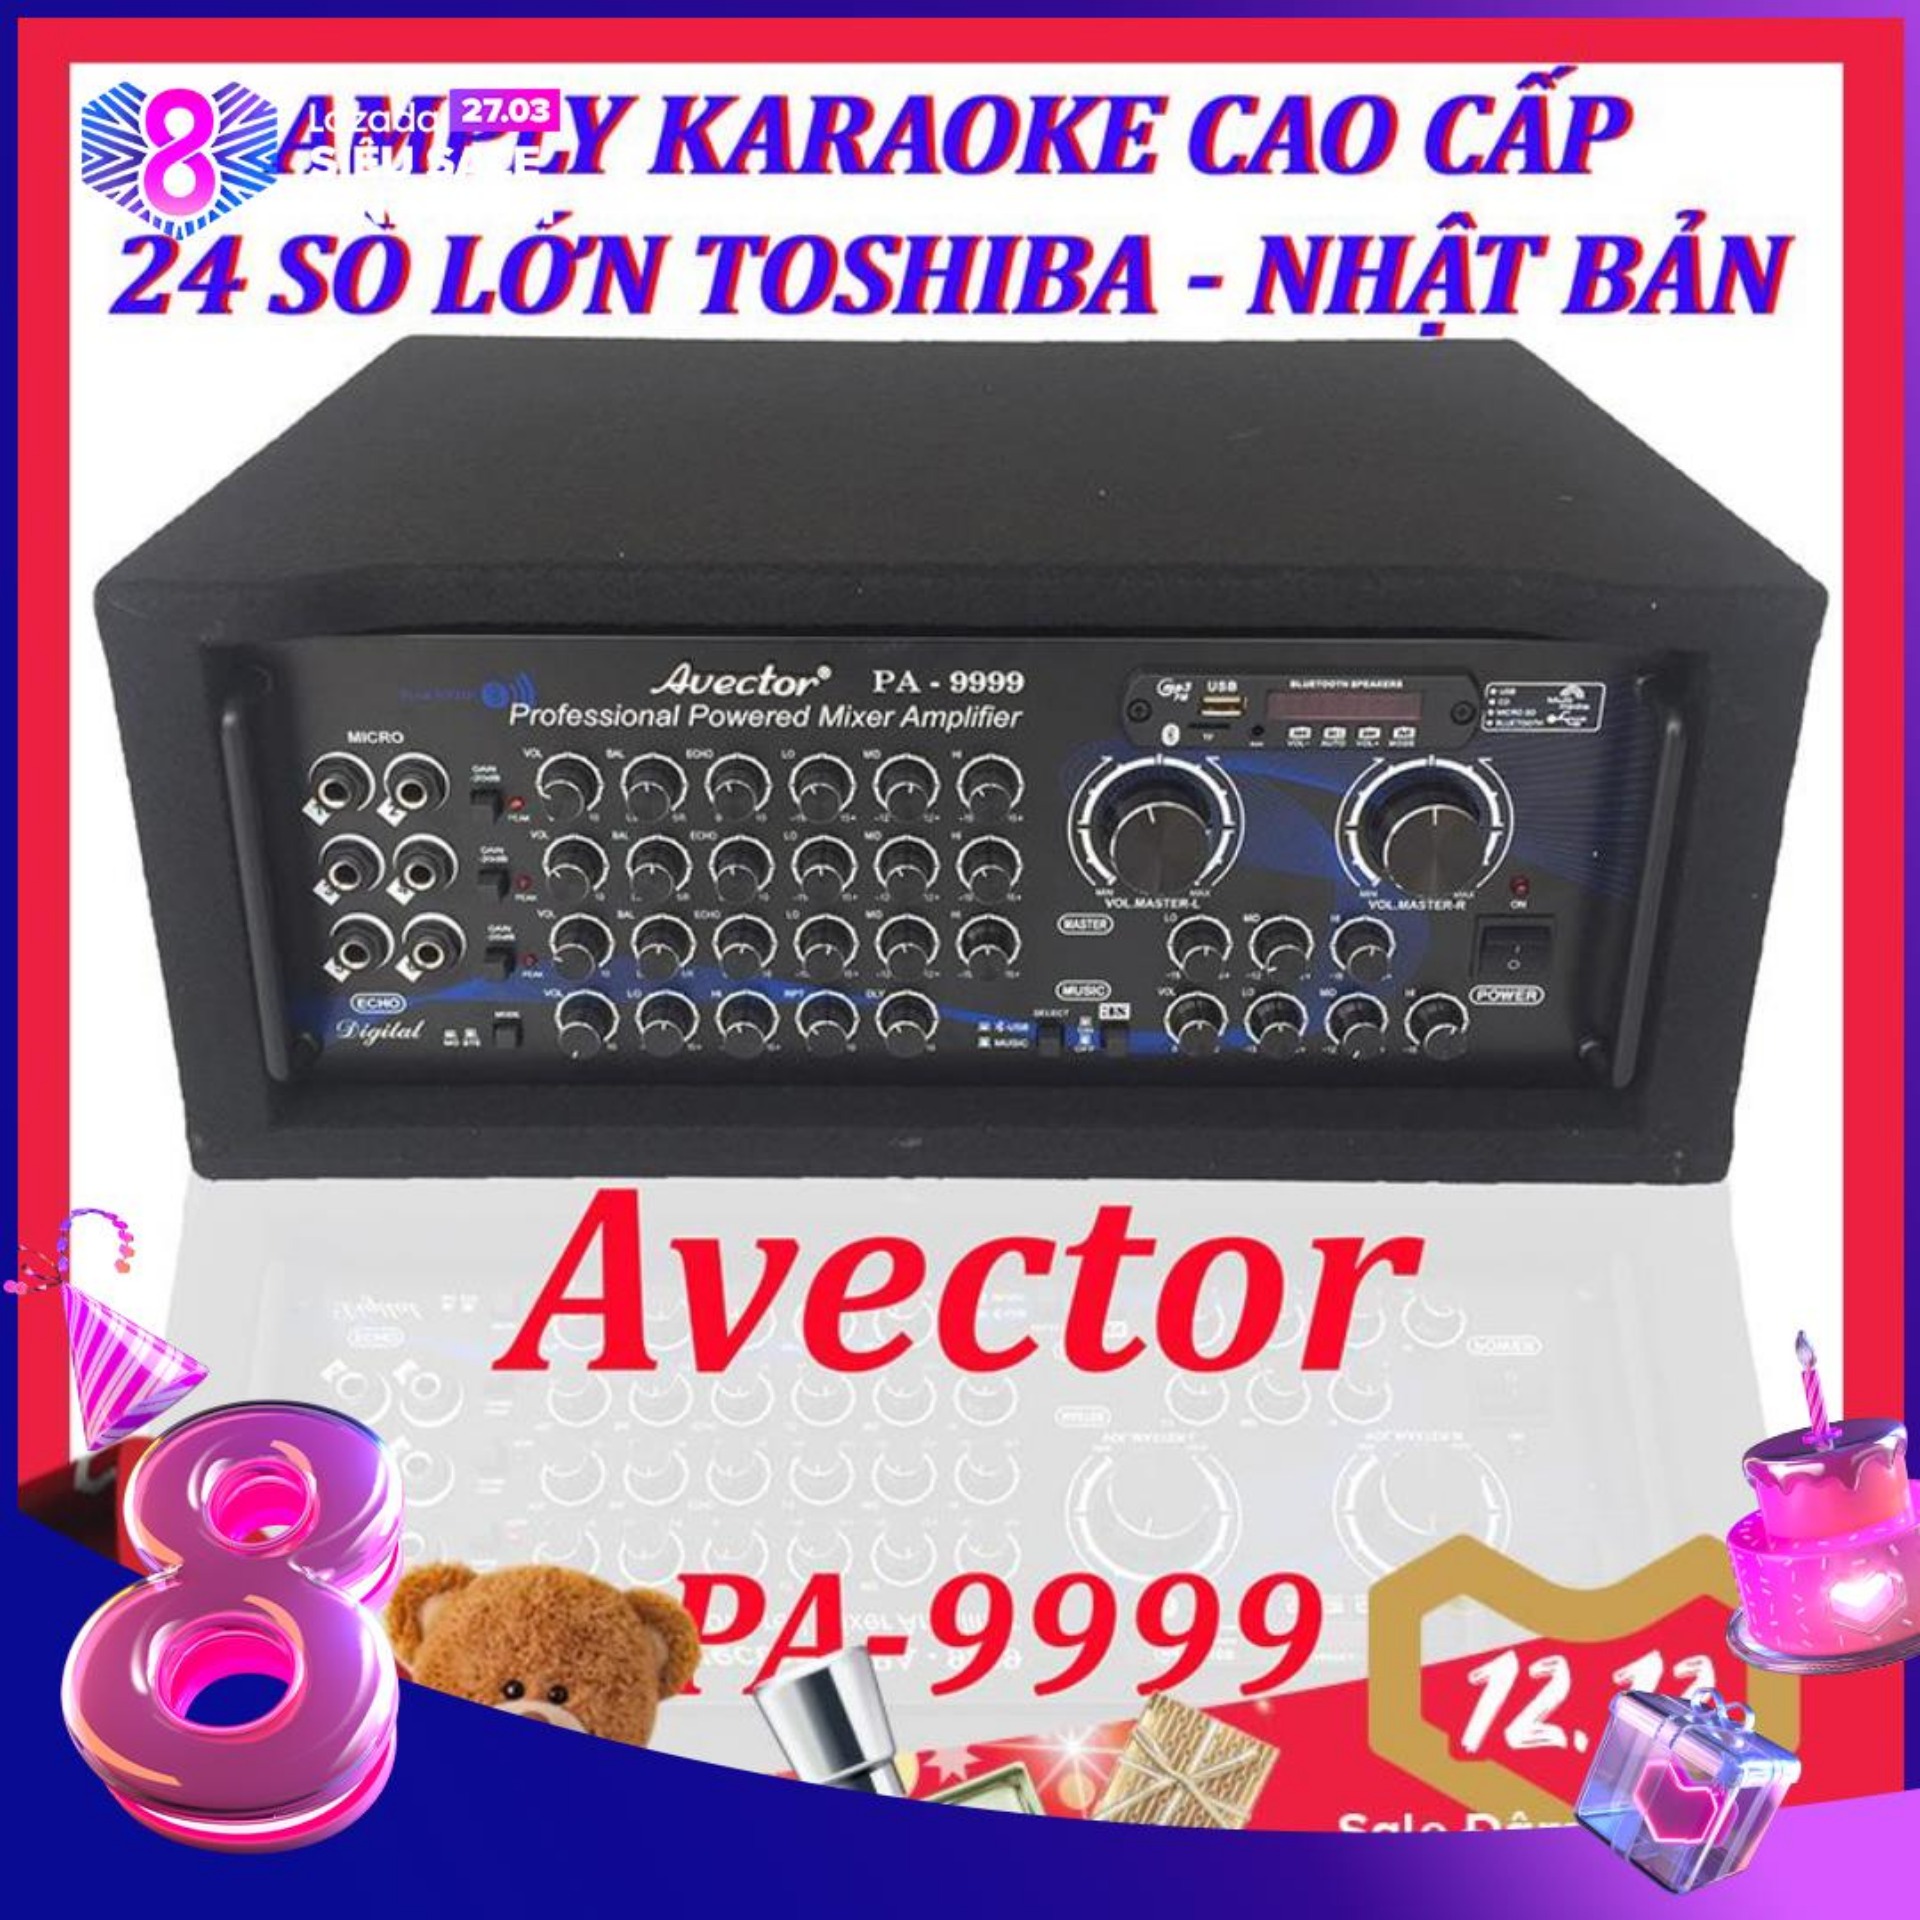 [Trả góp 0%]Amply karaoke gia đình - Amply bluetooth - amply sân khấu - amply nghe nhạc cao cấp công suất lớn Avector PA-9999 24 Sò toshiba nhật bản chính hãng